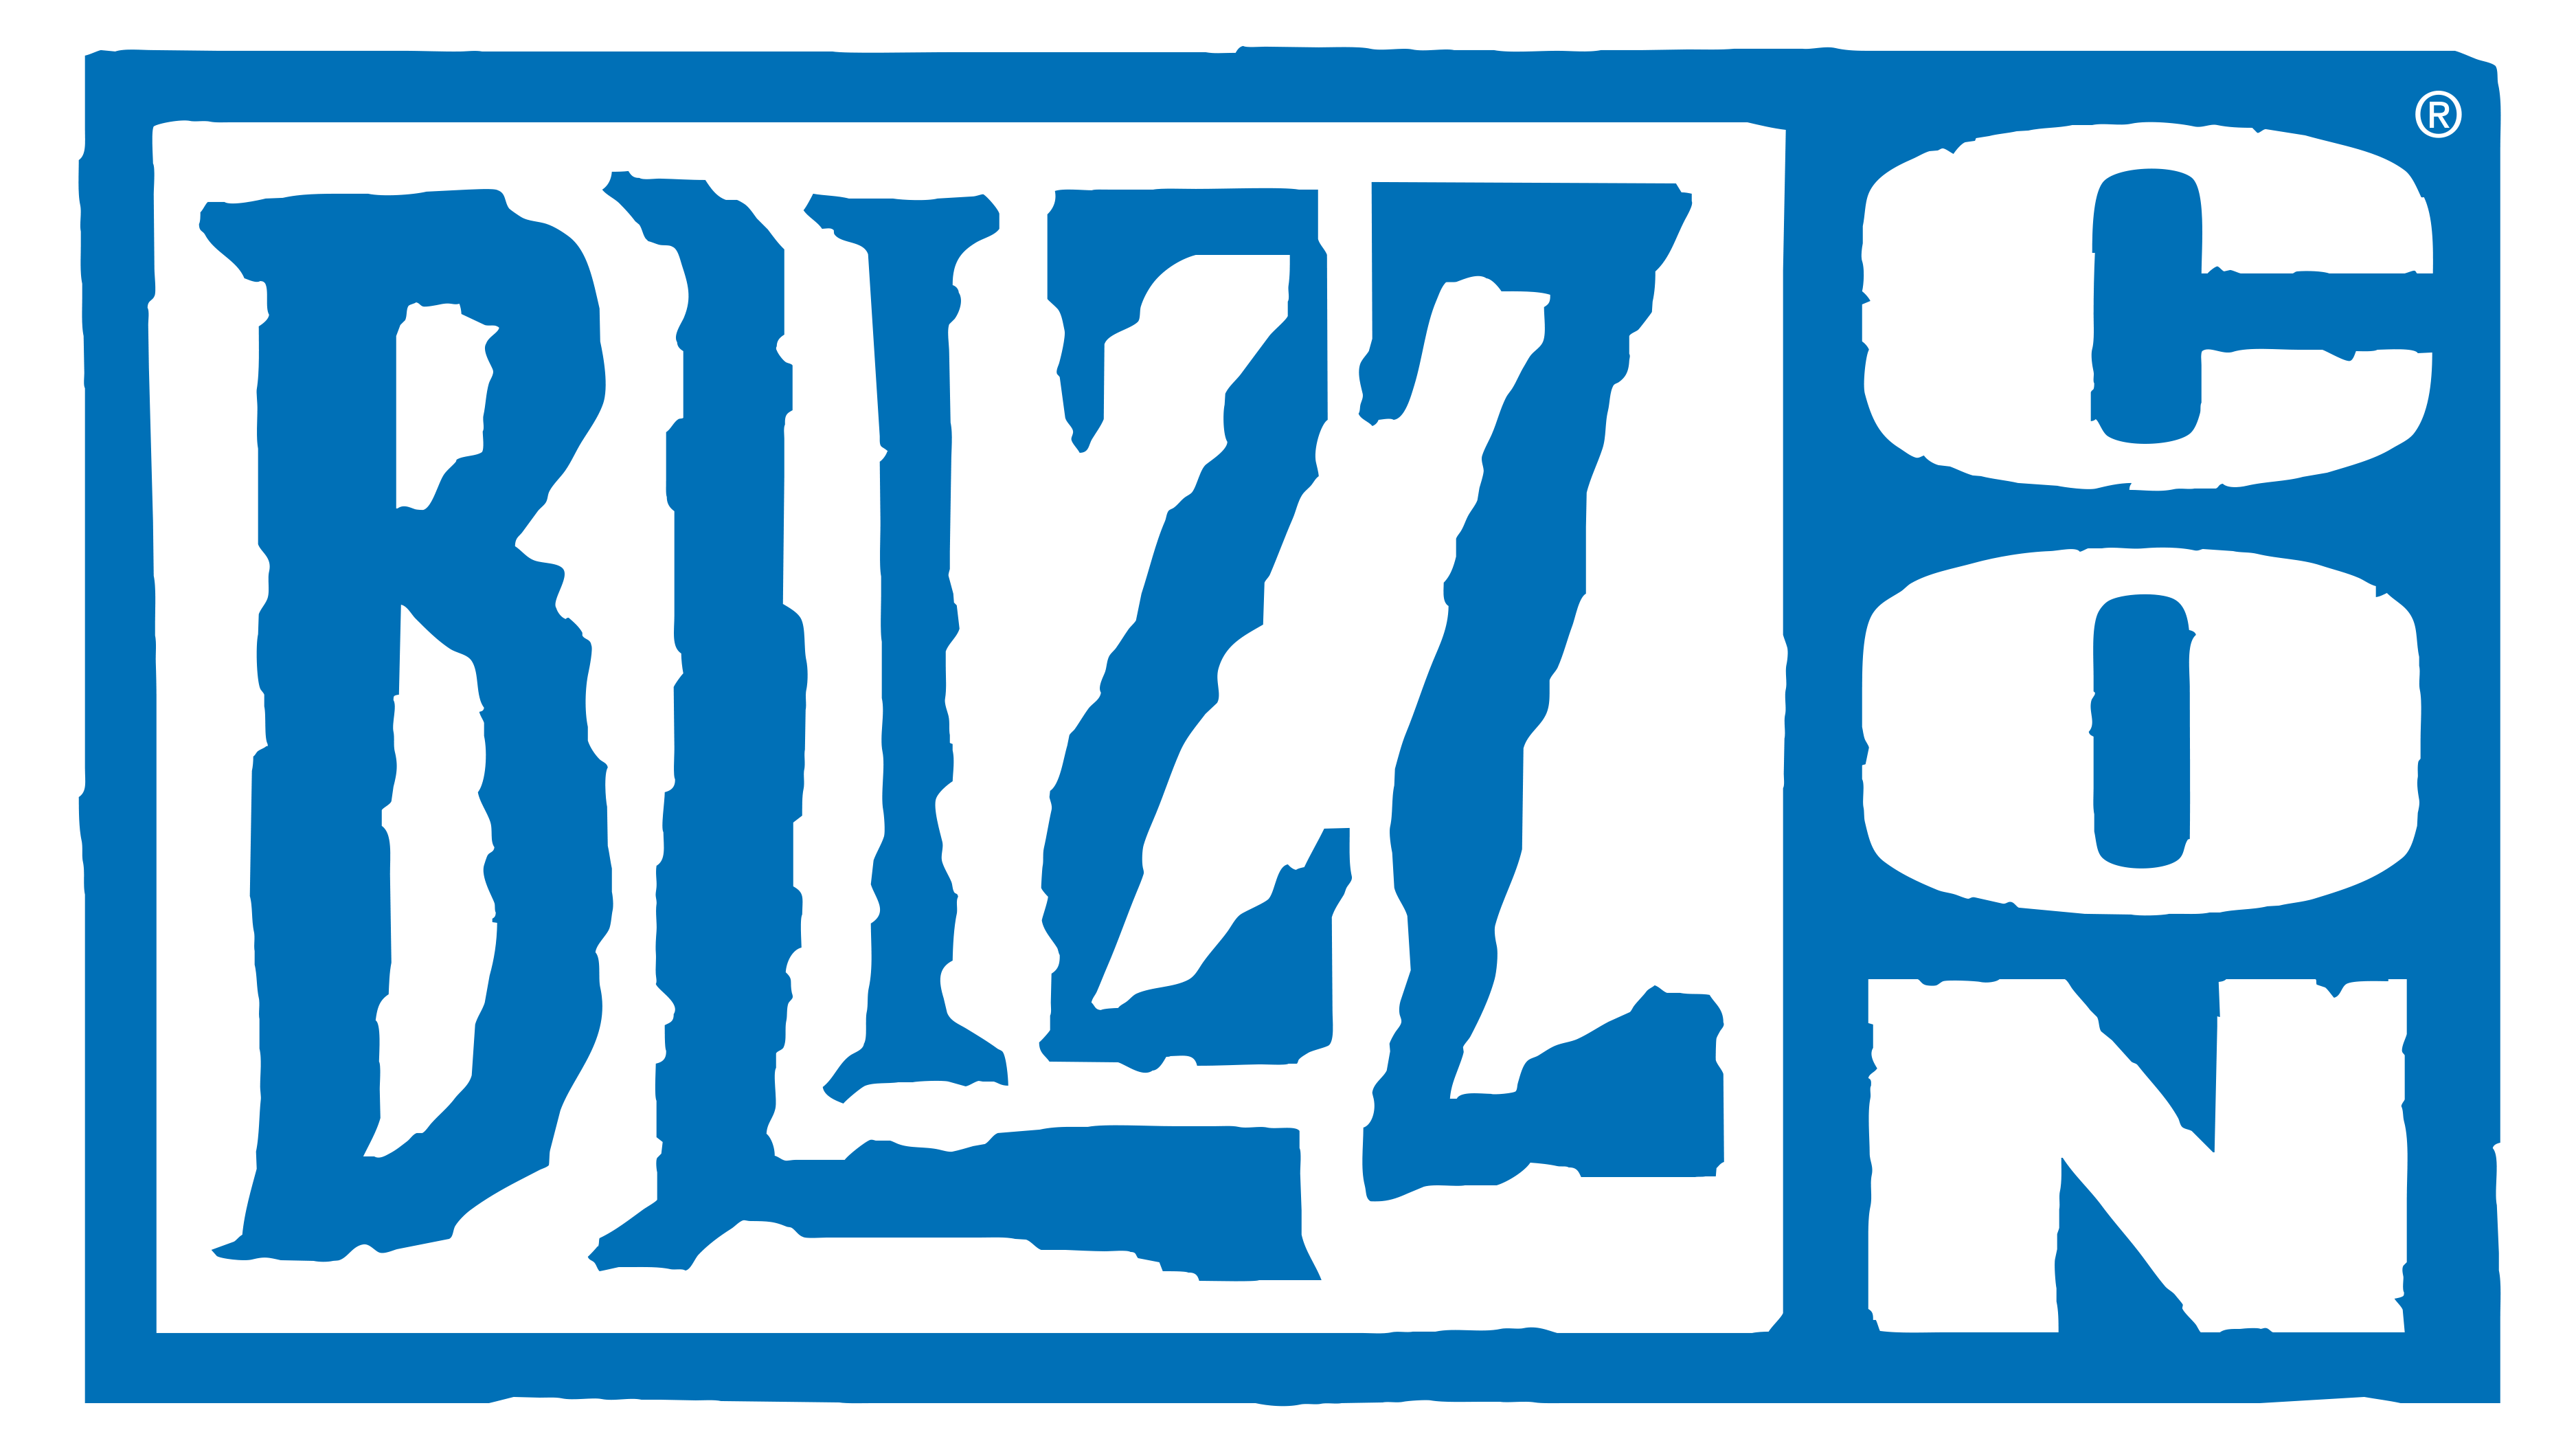 sorteamos 5 entradas virtuales para la inminente Blizzcon 2019